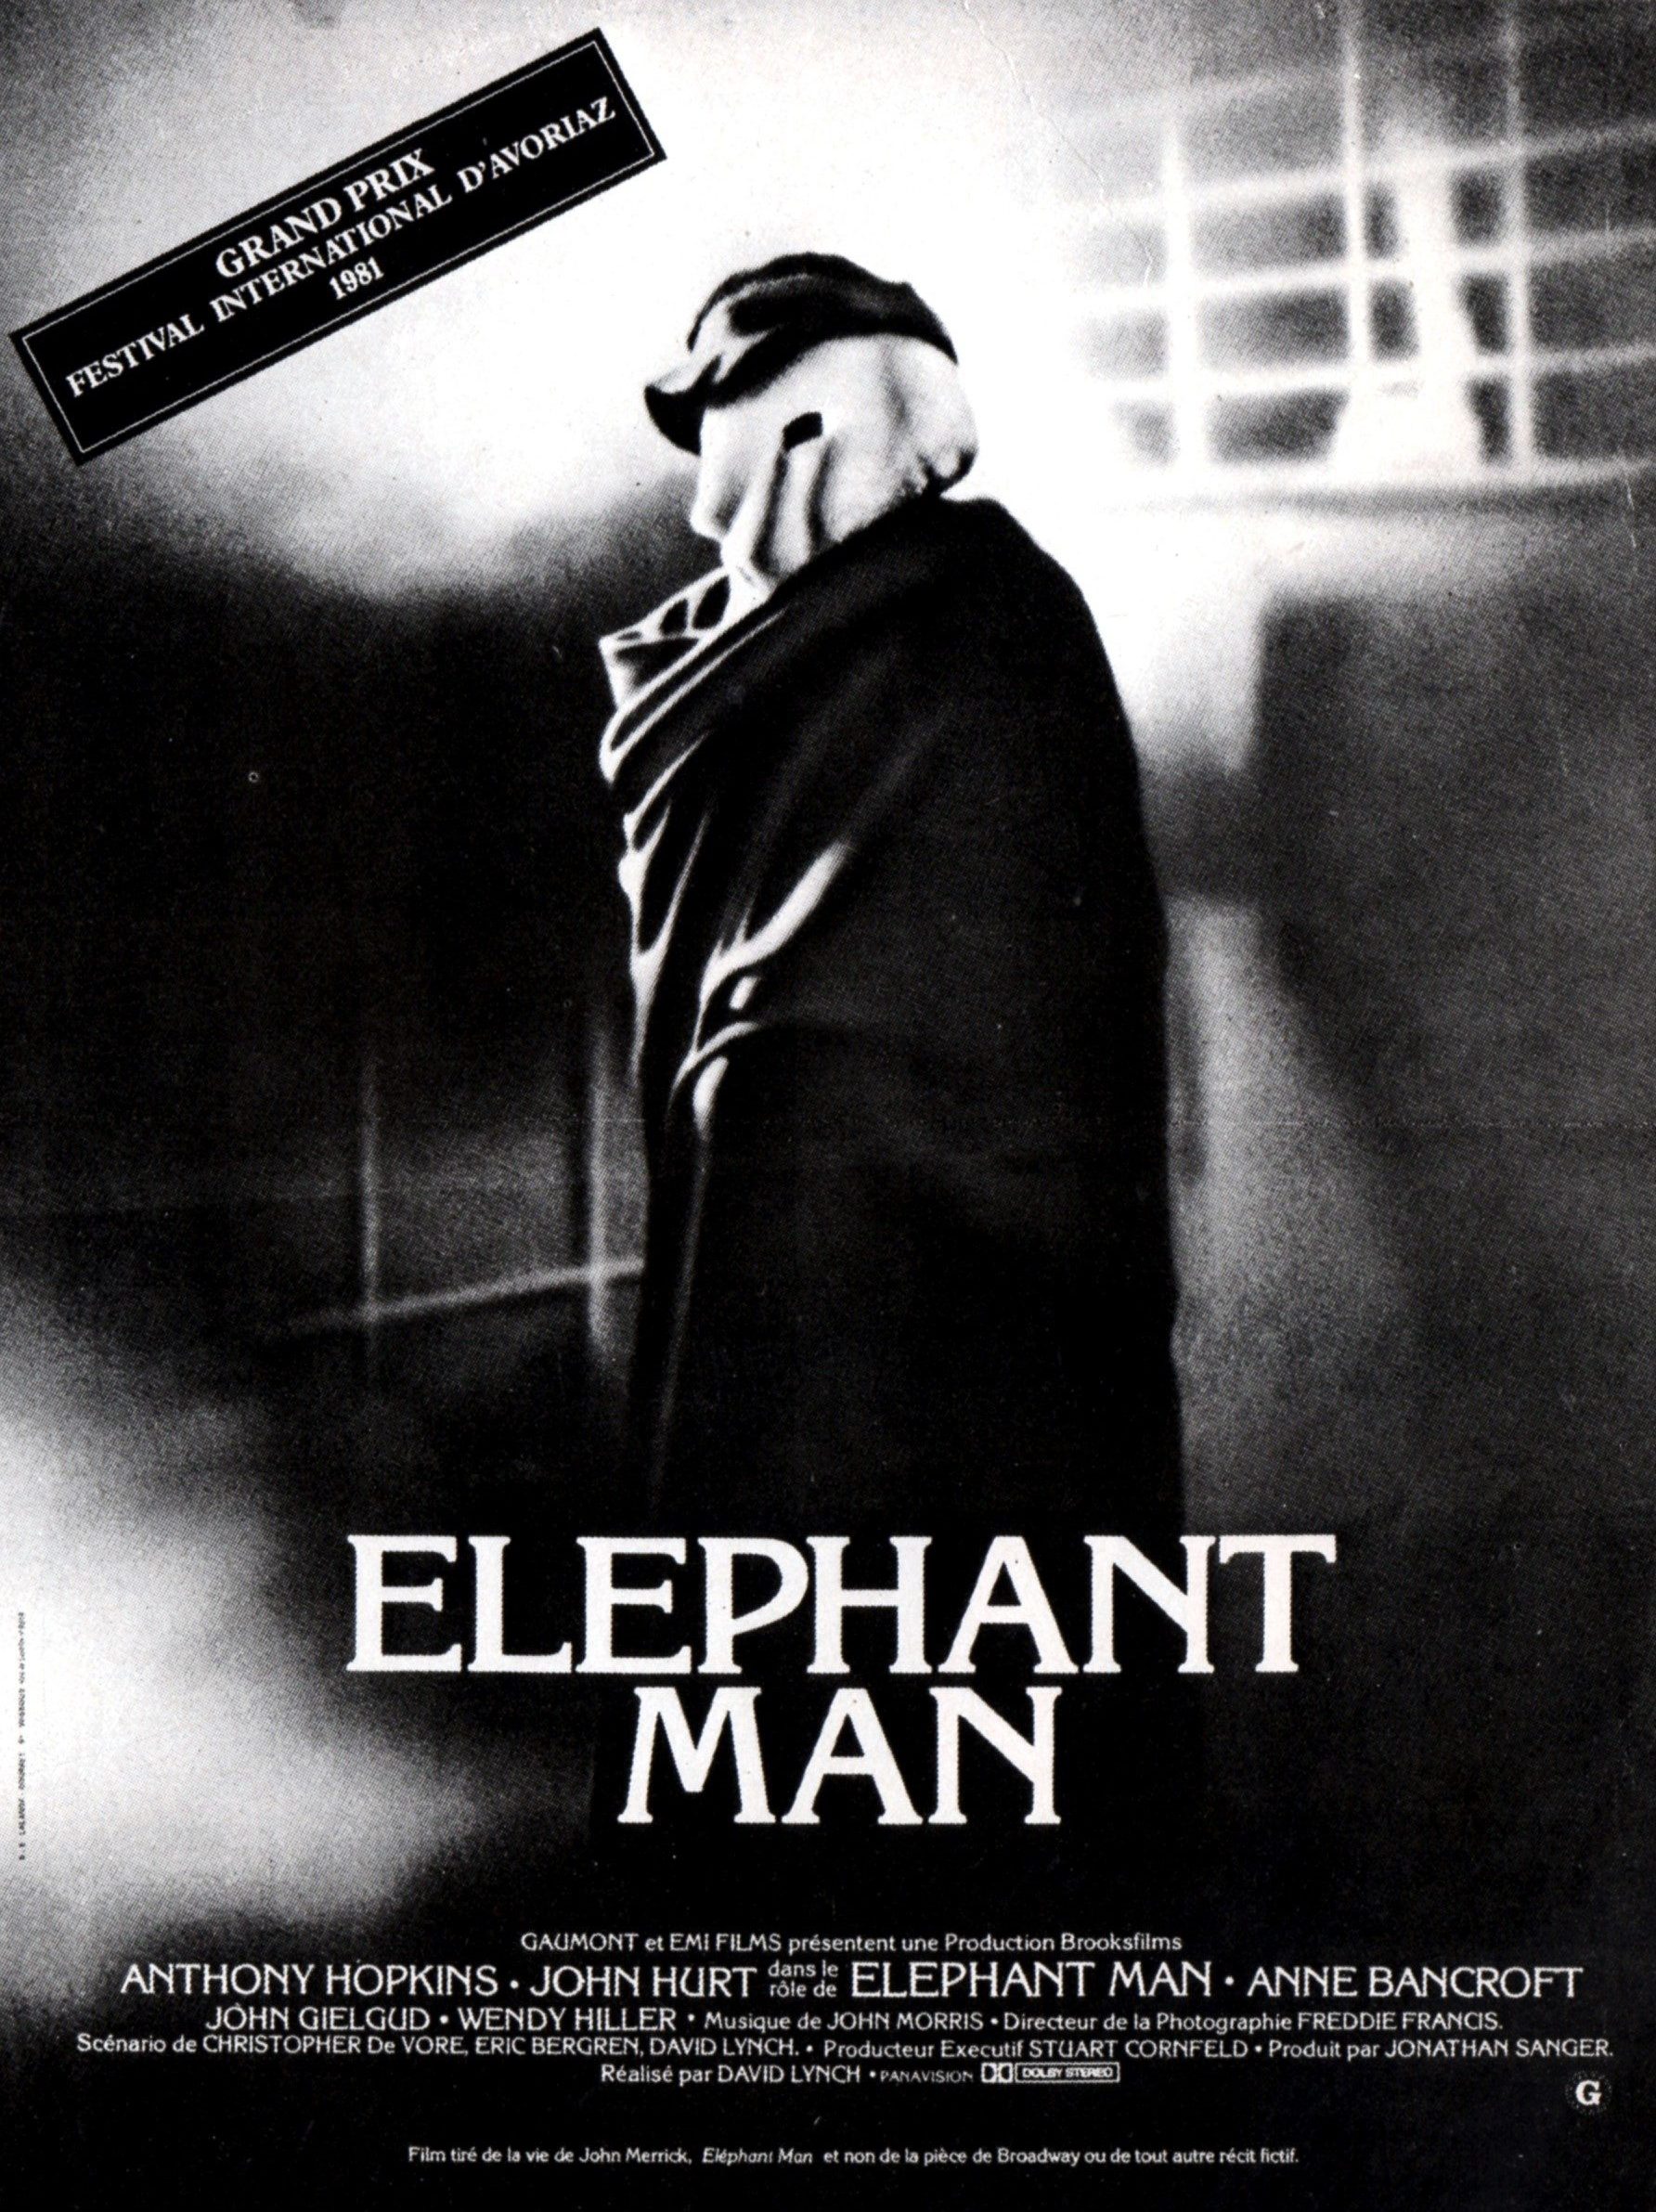 Film Elephant Man - Fiche cinéma image